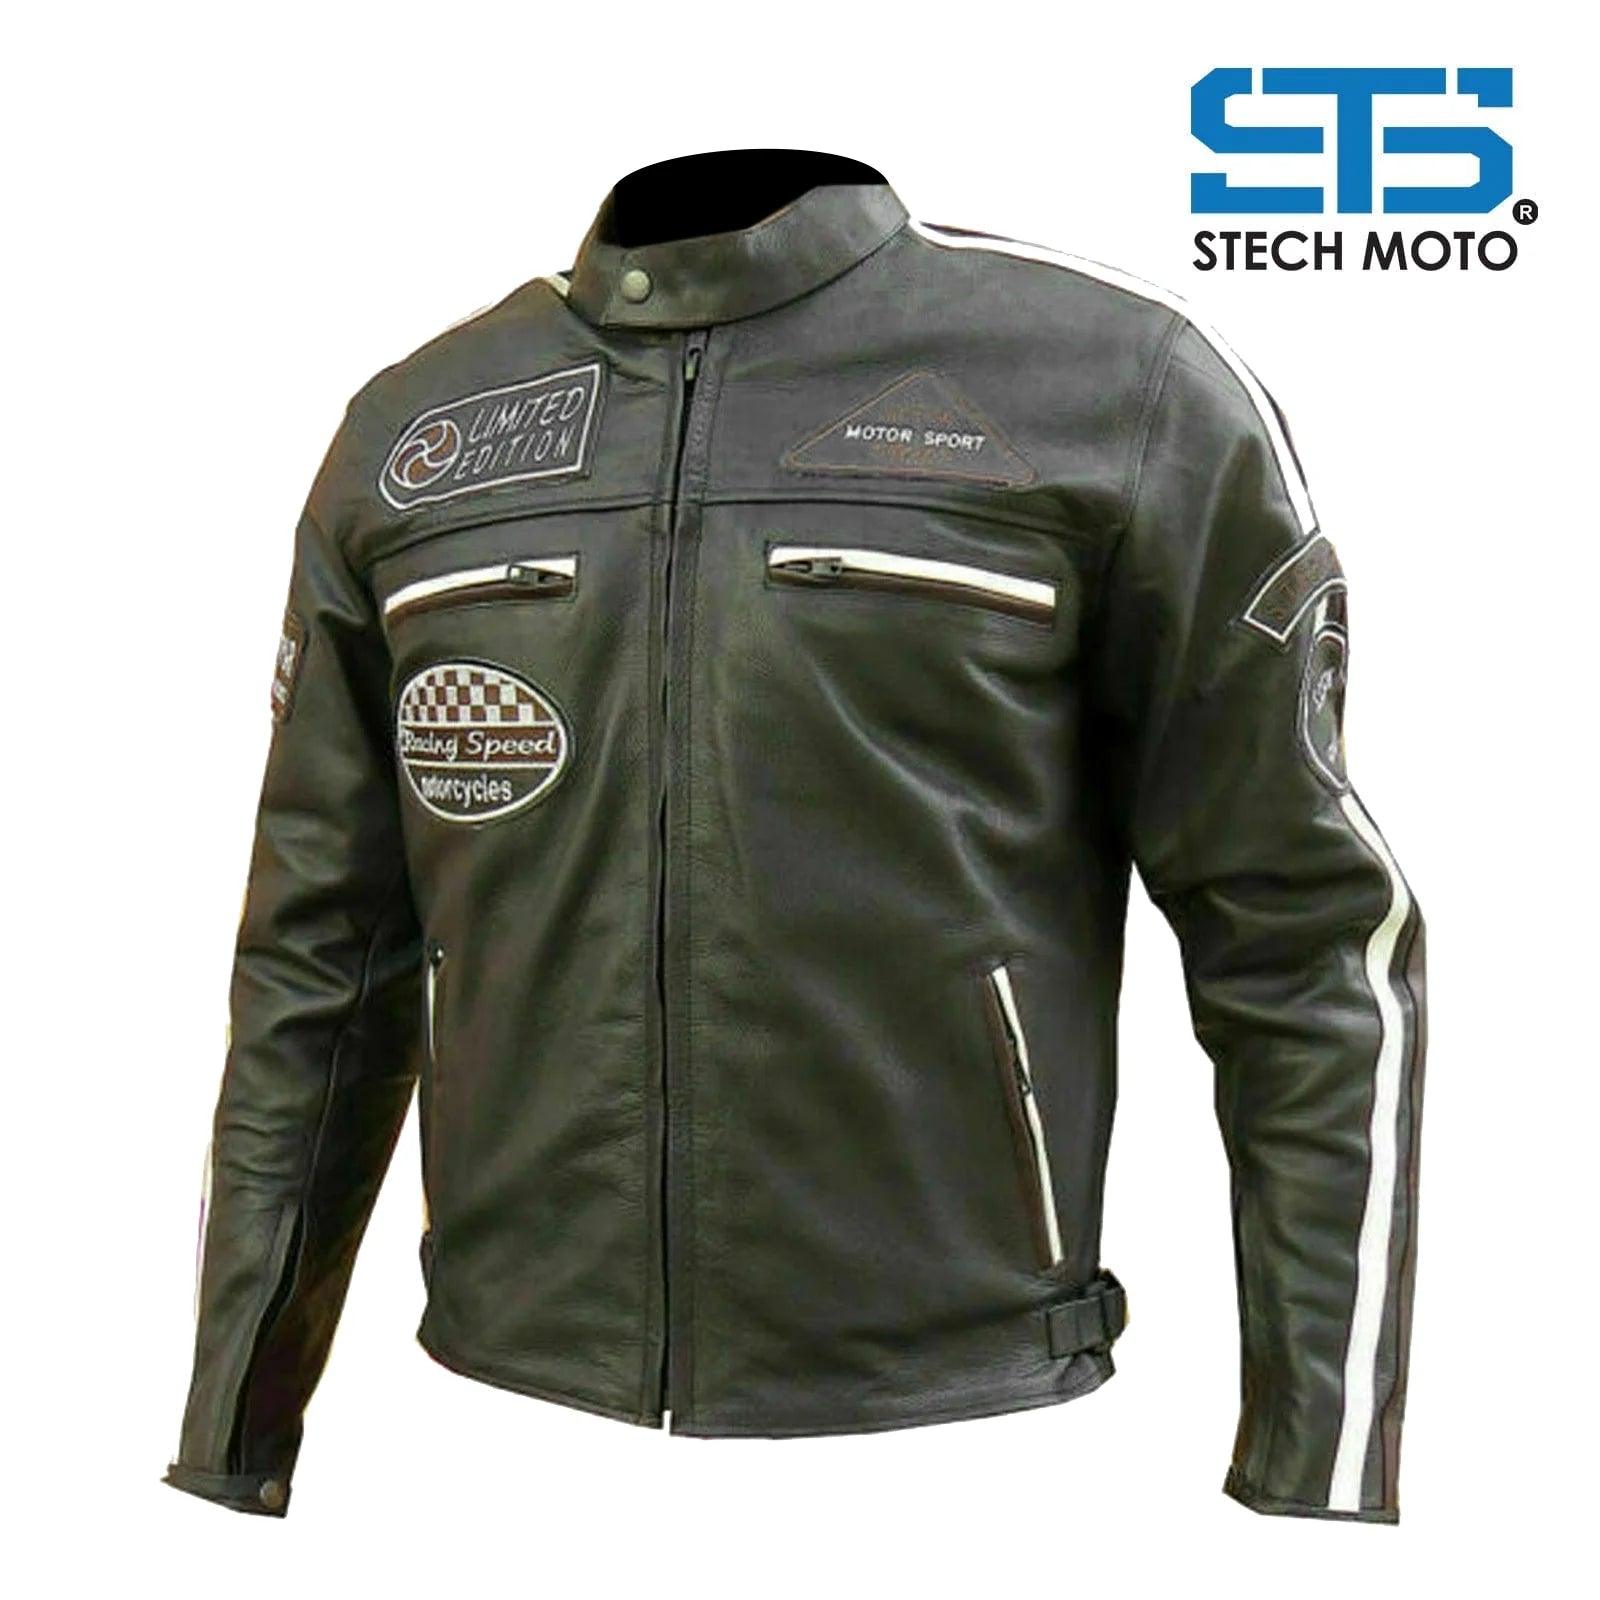 Moto Giubbotto in pelle da Uomo Stechmoto ST 1735 Vintage Custom & Café Race - Am Moto-Abbigliamento Moto